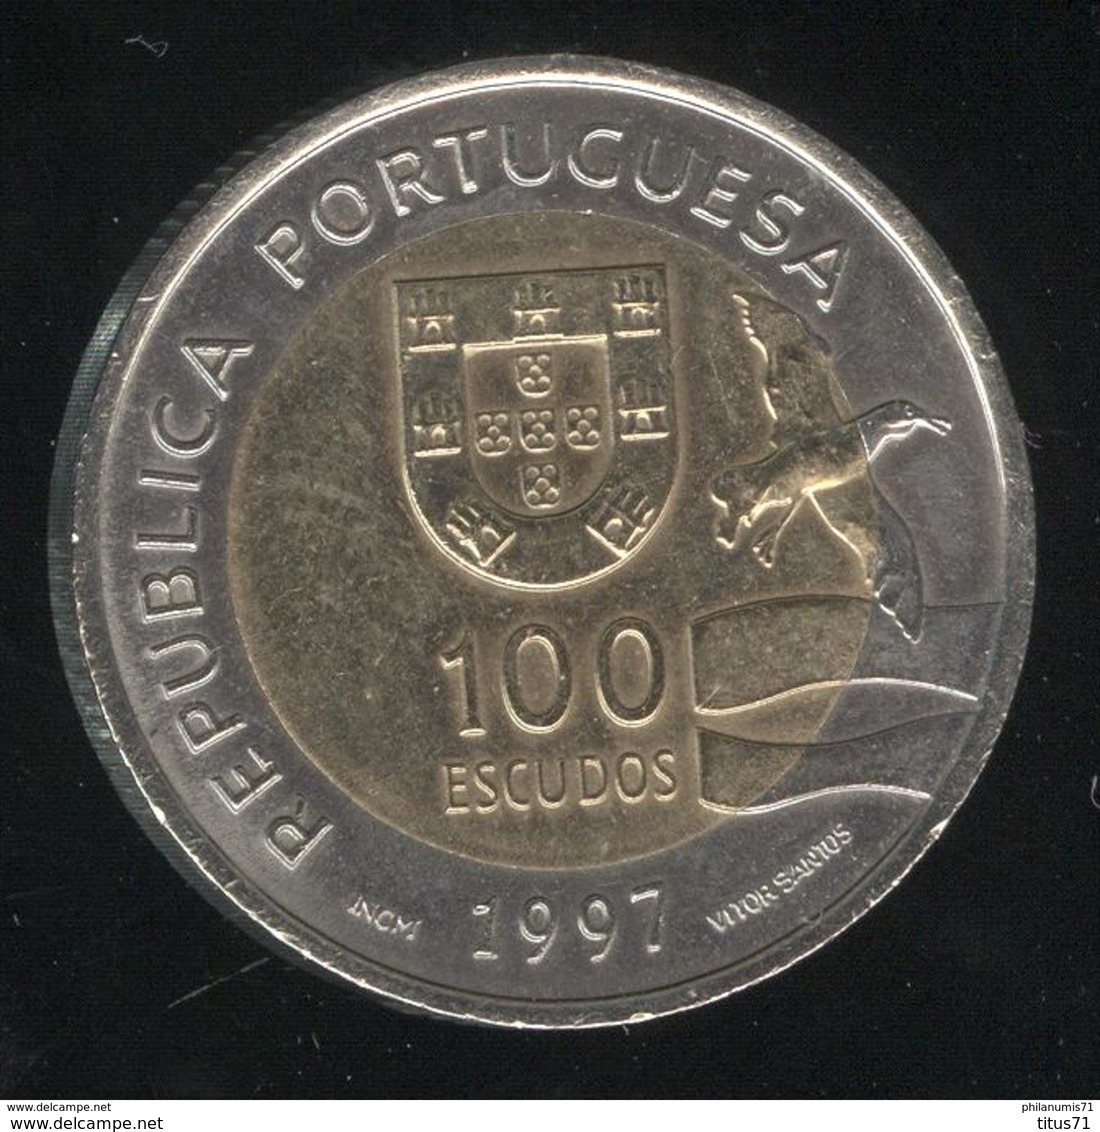 100 Escudos Portugal 1997 - Exposition Mondiale De Lisbonne 1998 - Portugal